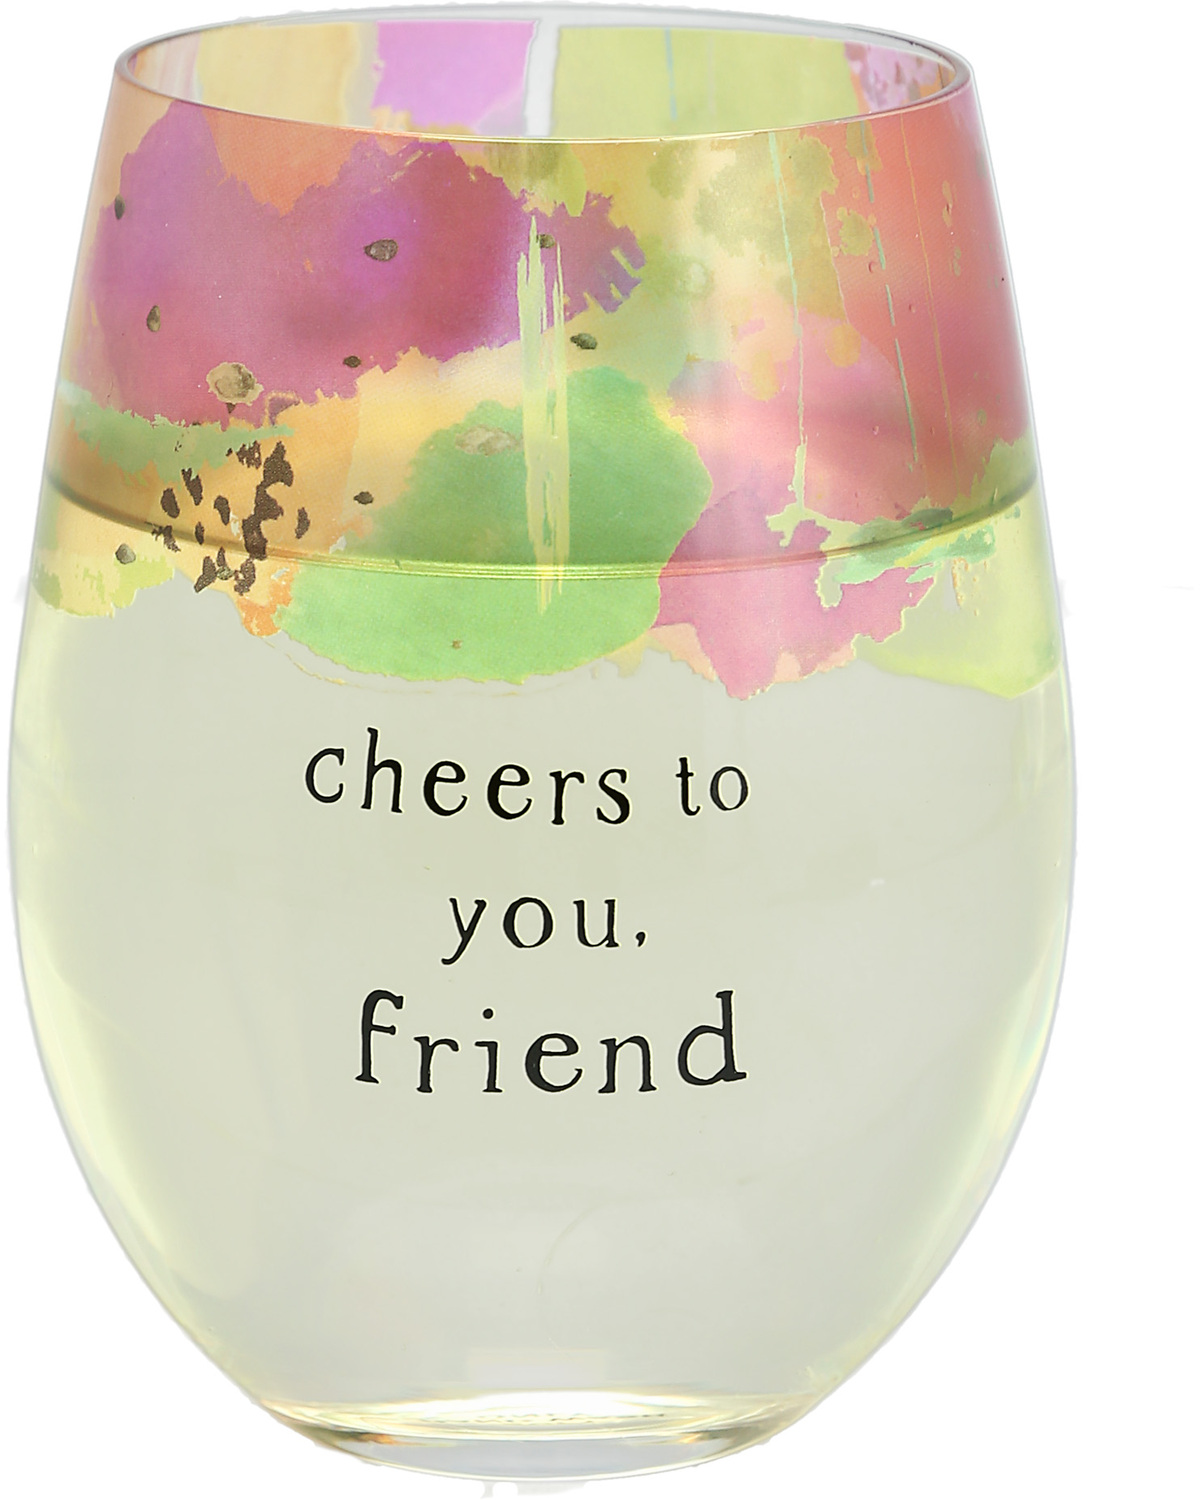 Friend by Celebrating You - Friend - 18 oz Stemless Wine Glass